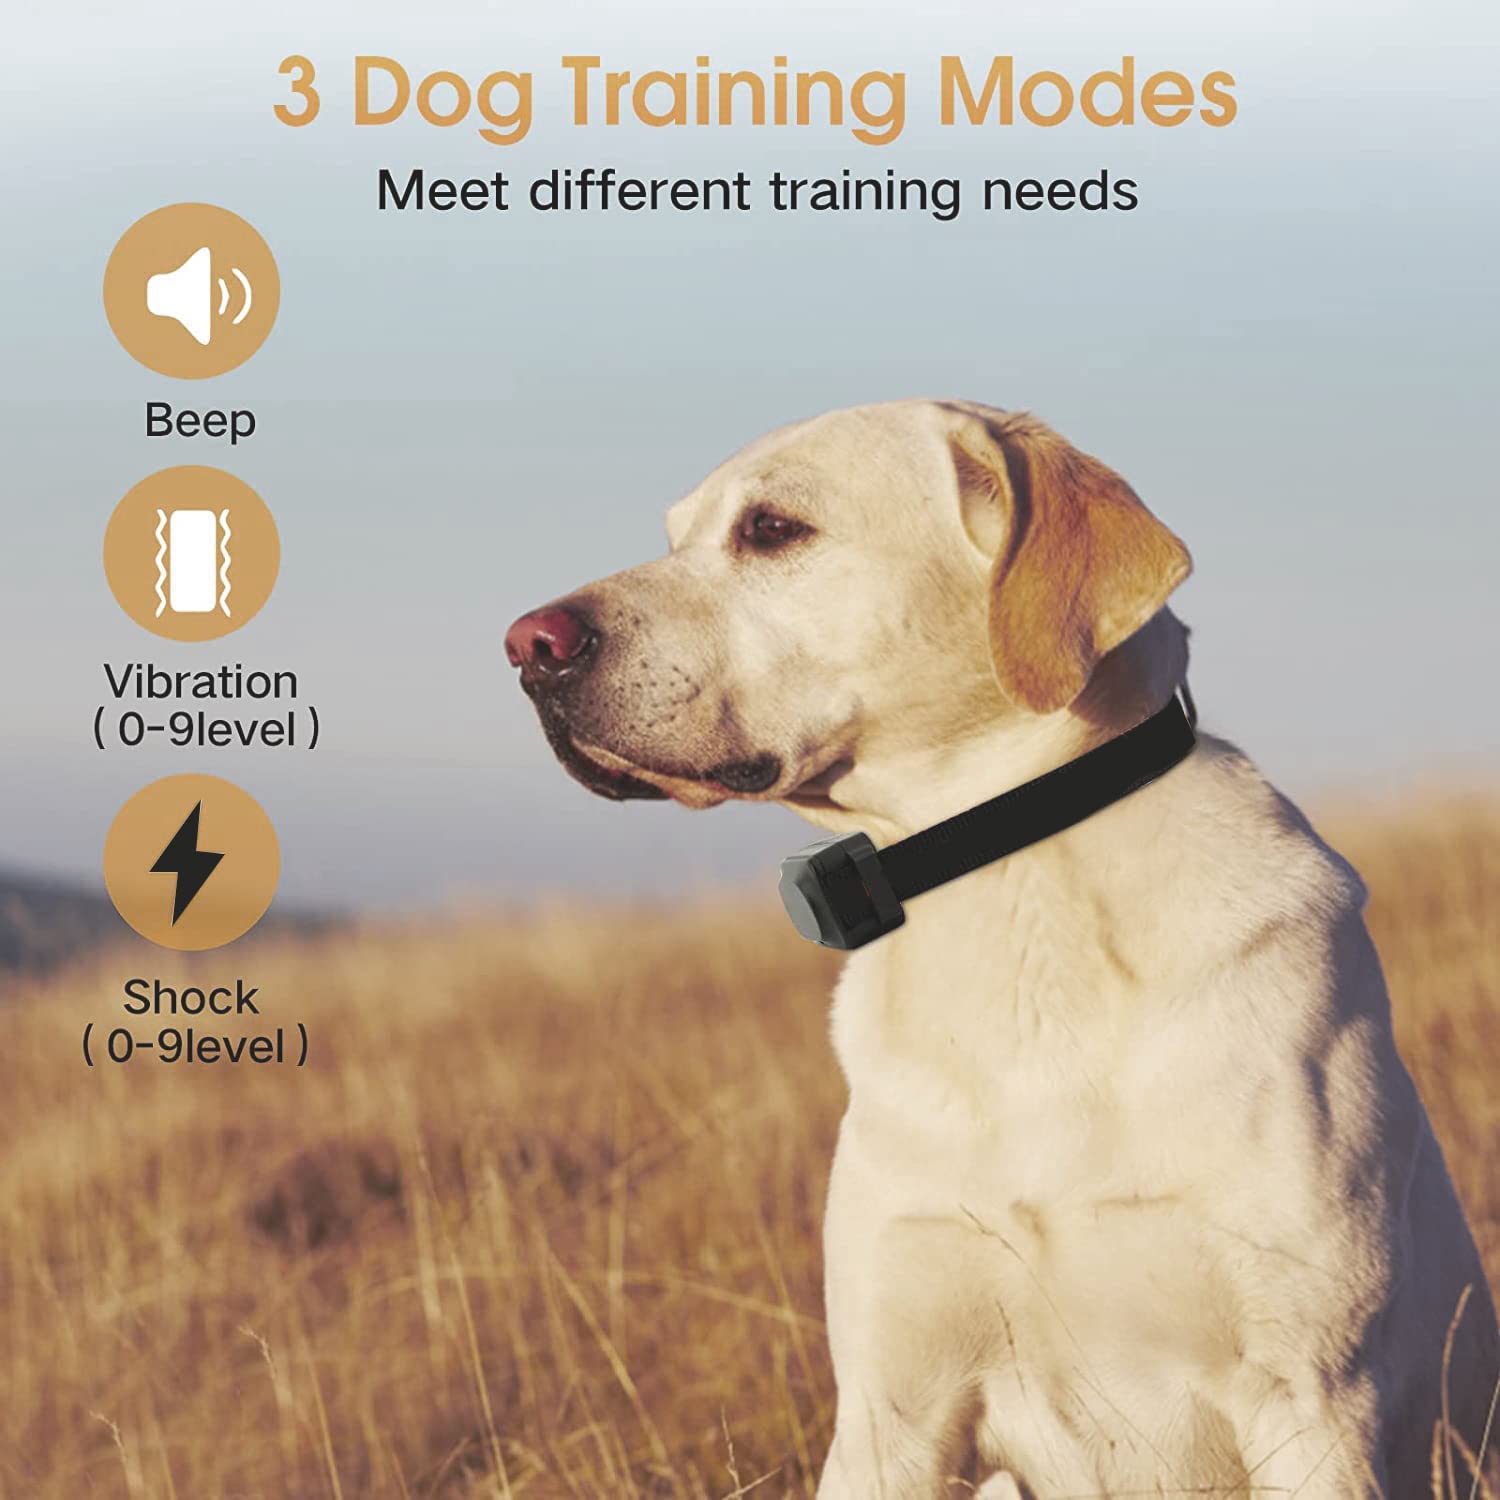  قلاده آموزش سگ با ریموت دارای تنظیمات کانال 1+2 حالت 2 کانال و 3 کانال می باشد که می توانید بدون تغییر کانال به طور همزمان دو سگ را تربیت کنید.